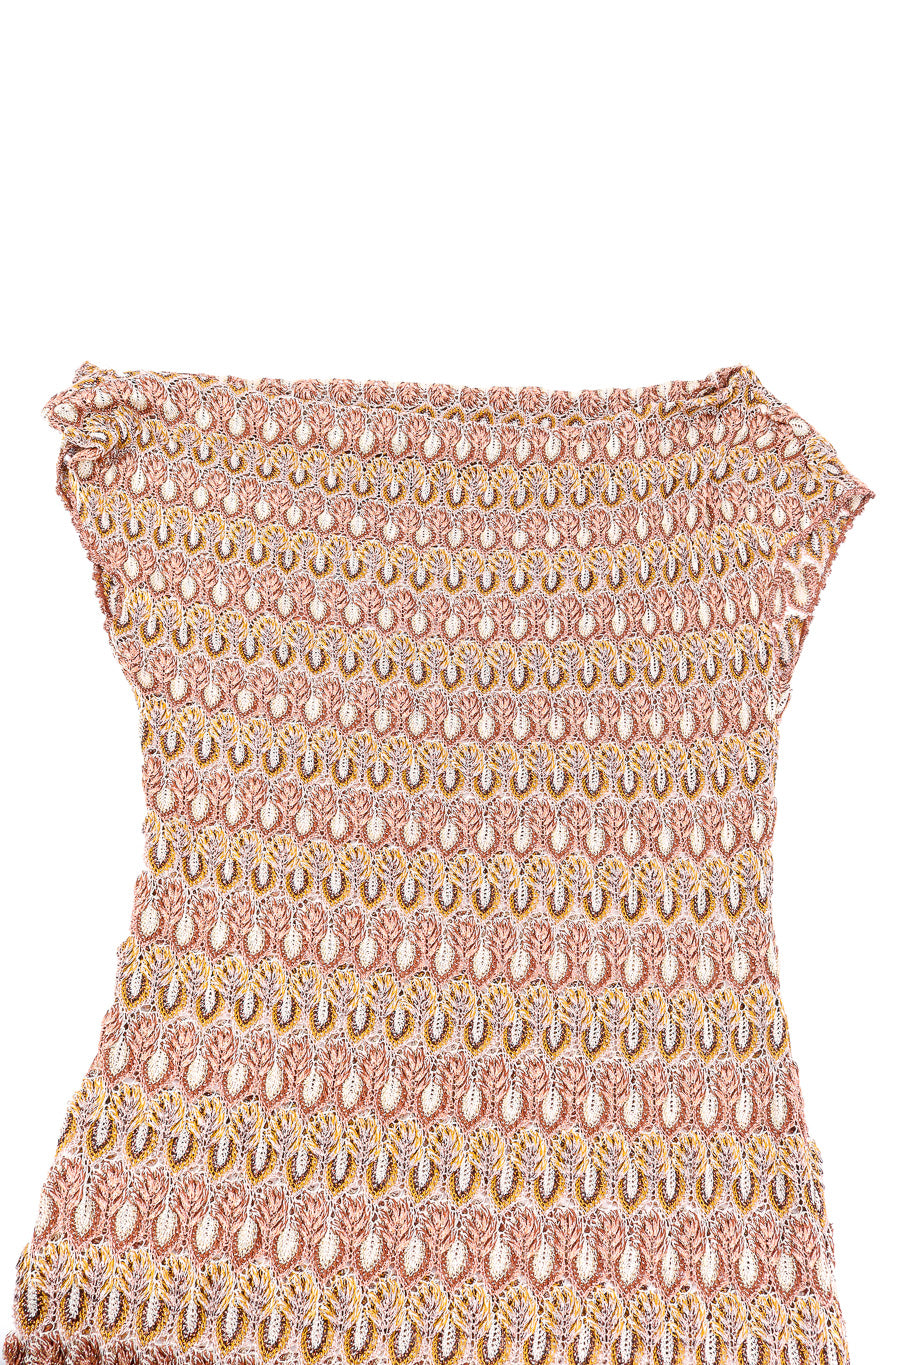 Missoni metallic knit dress flat-lay @recessla